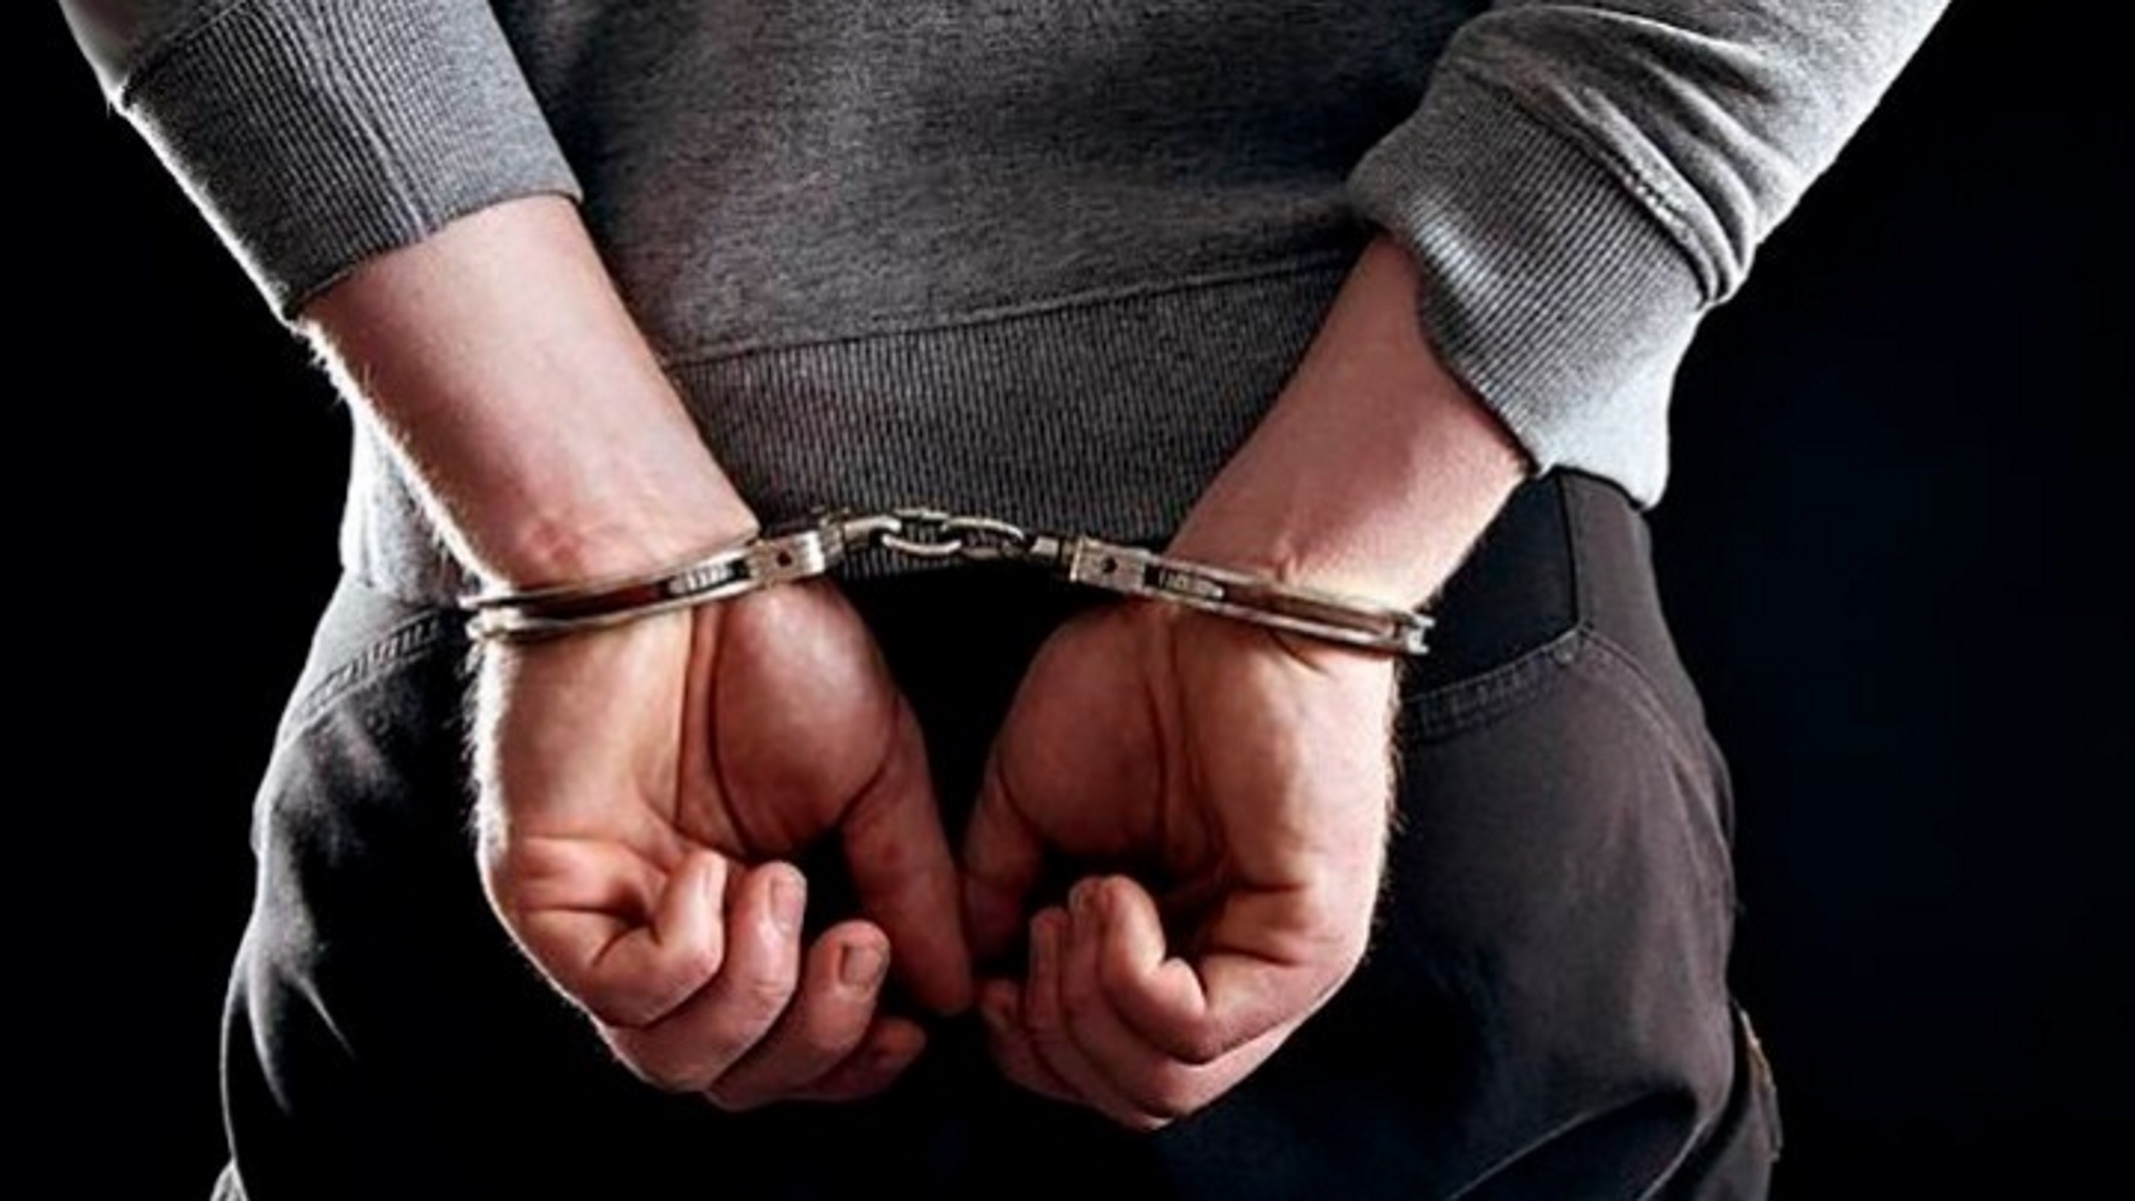 Φλώρινα: Ο έλεγχος στα σύνορα ξεσκέπασε τις παλιές «αμαρτίες» του – Σε εισαγγελέα ο 28χρονος